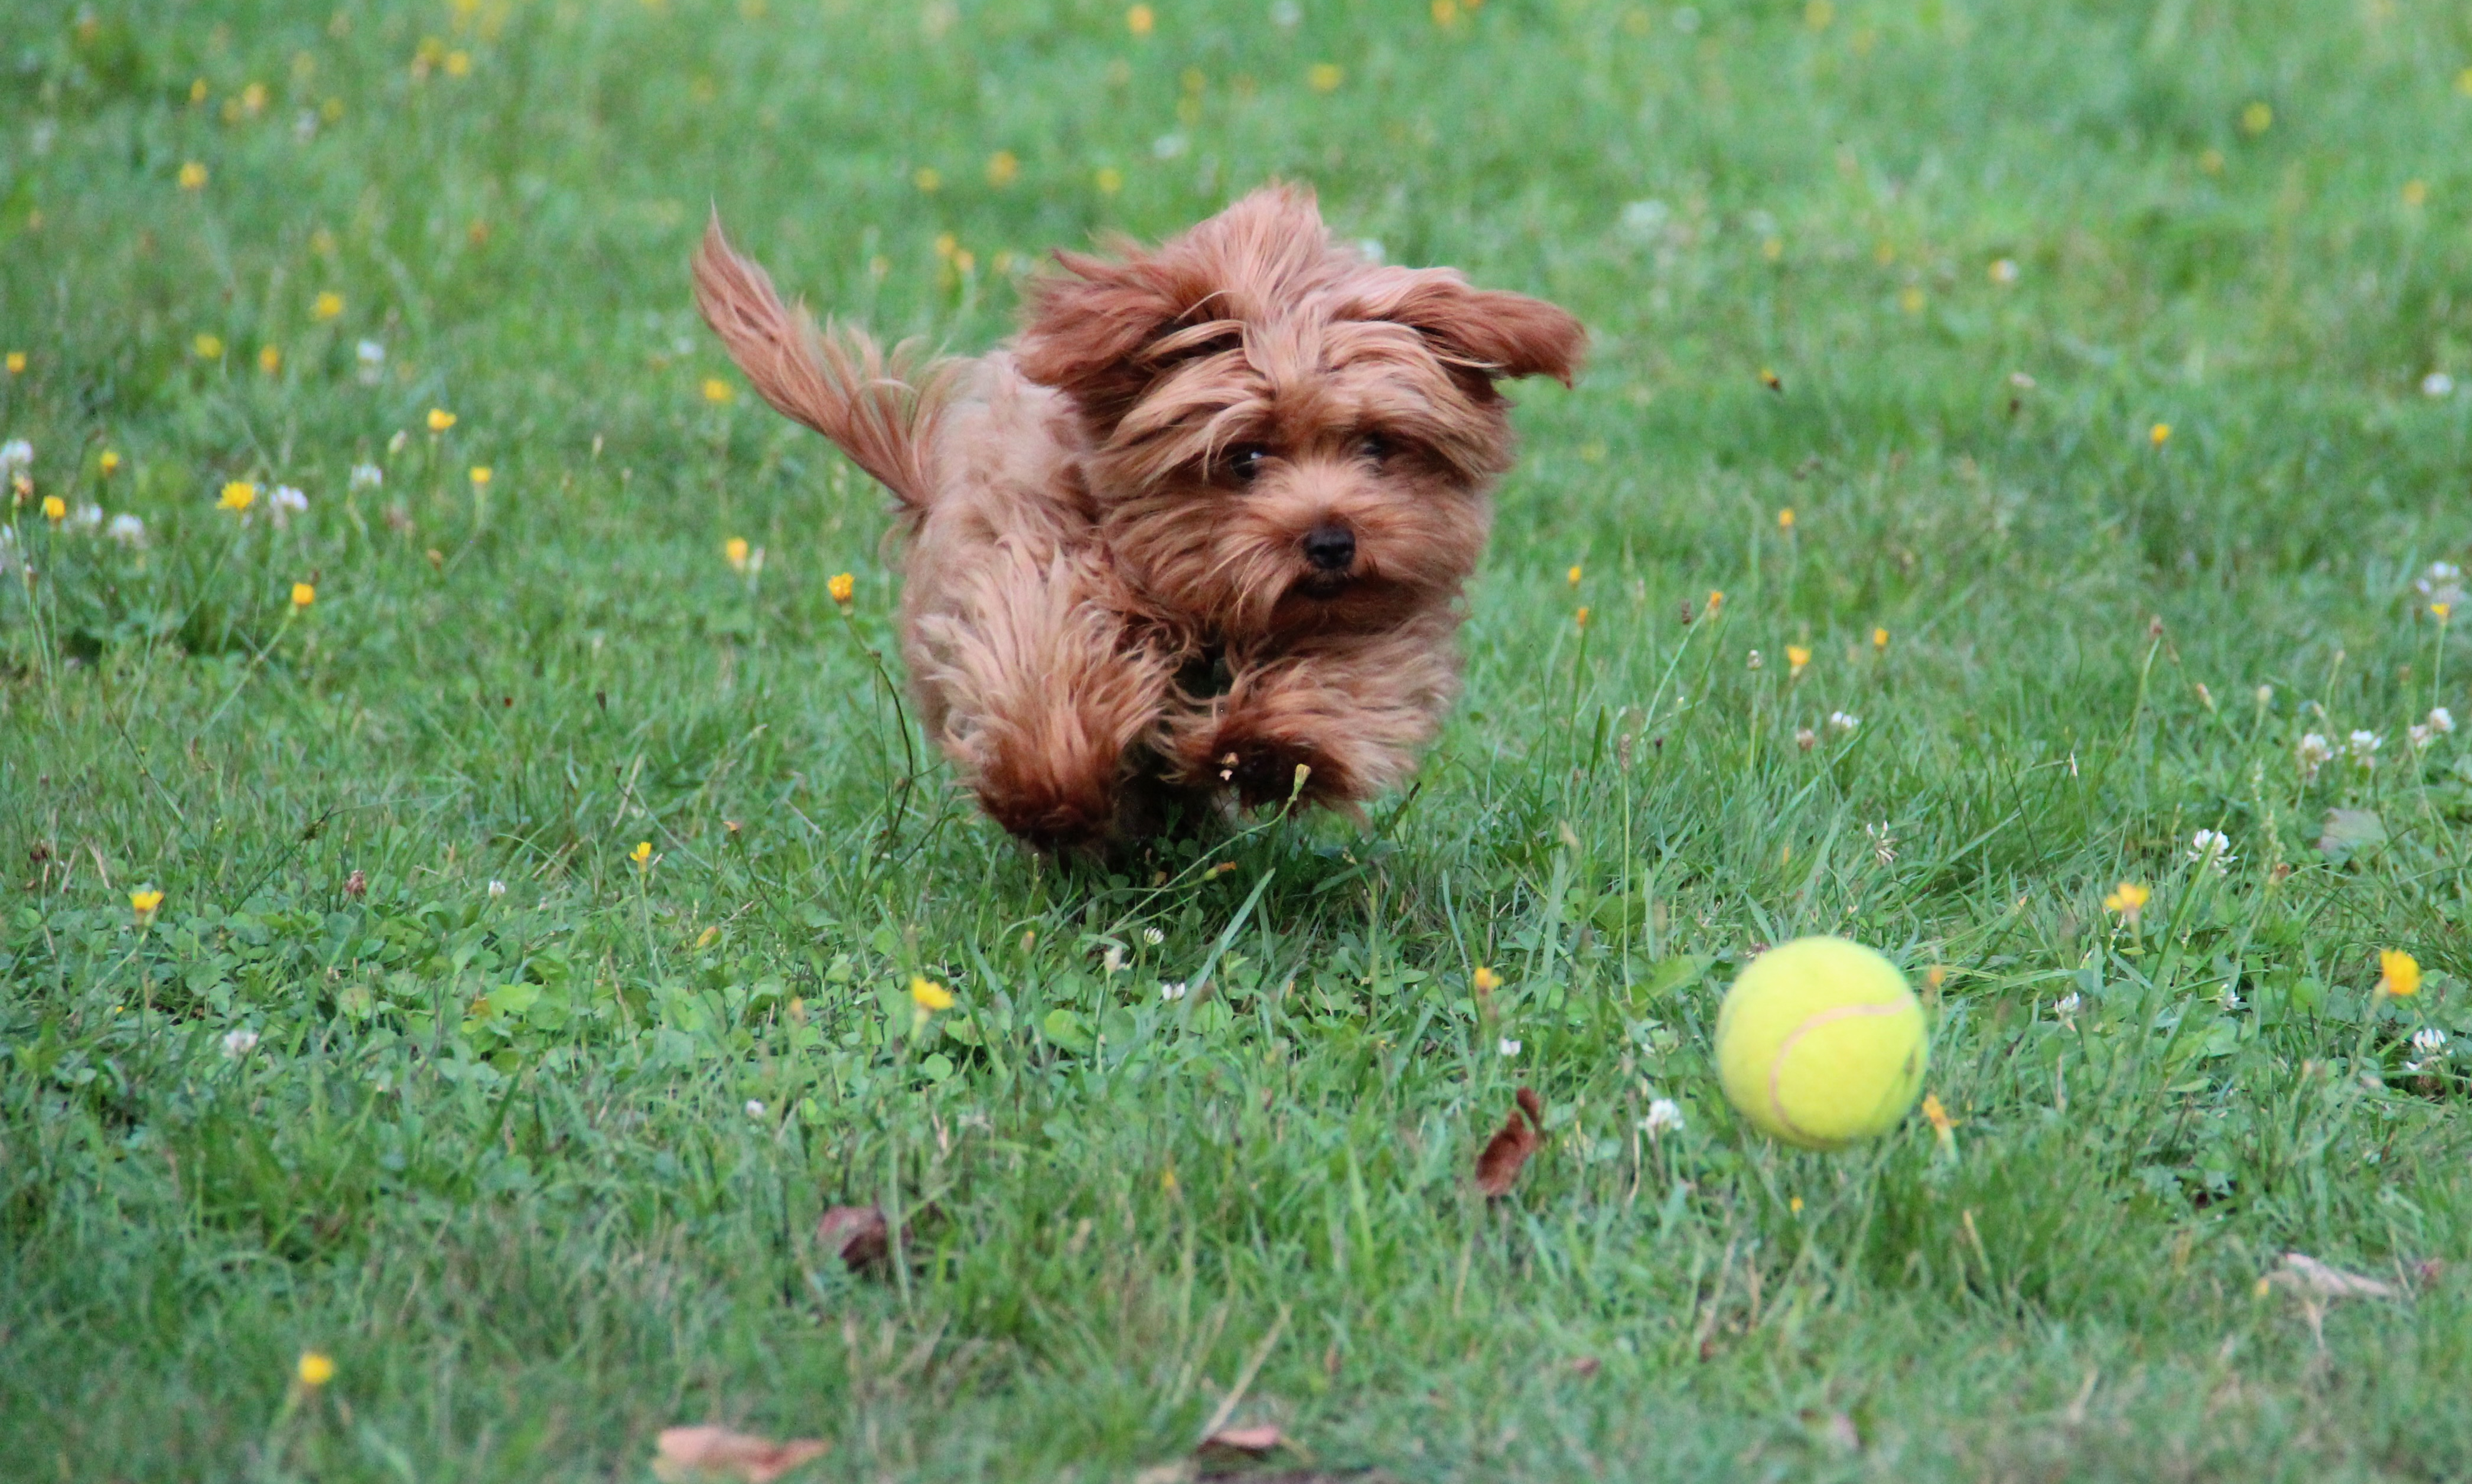 Kleine Hund rennt auf Tennisball zu